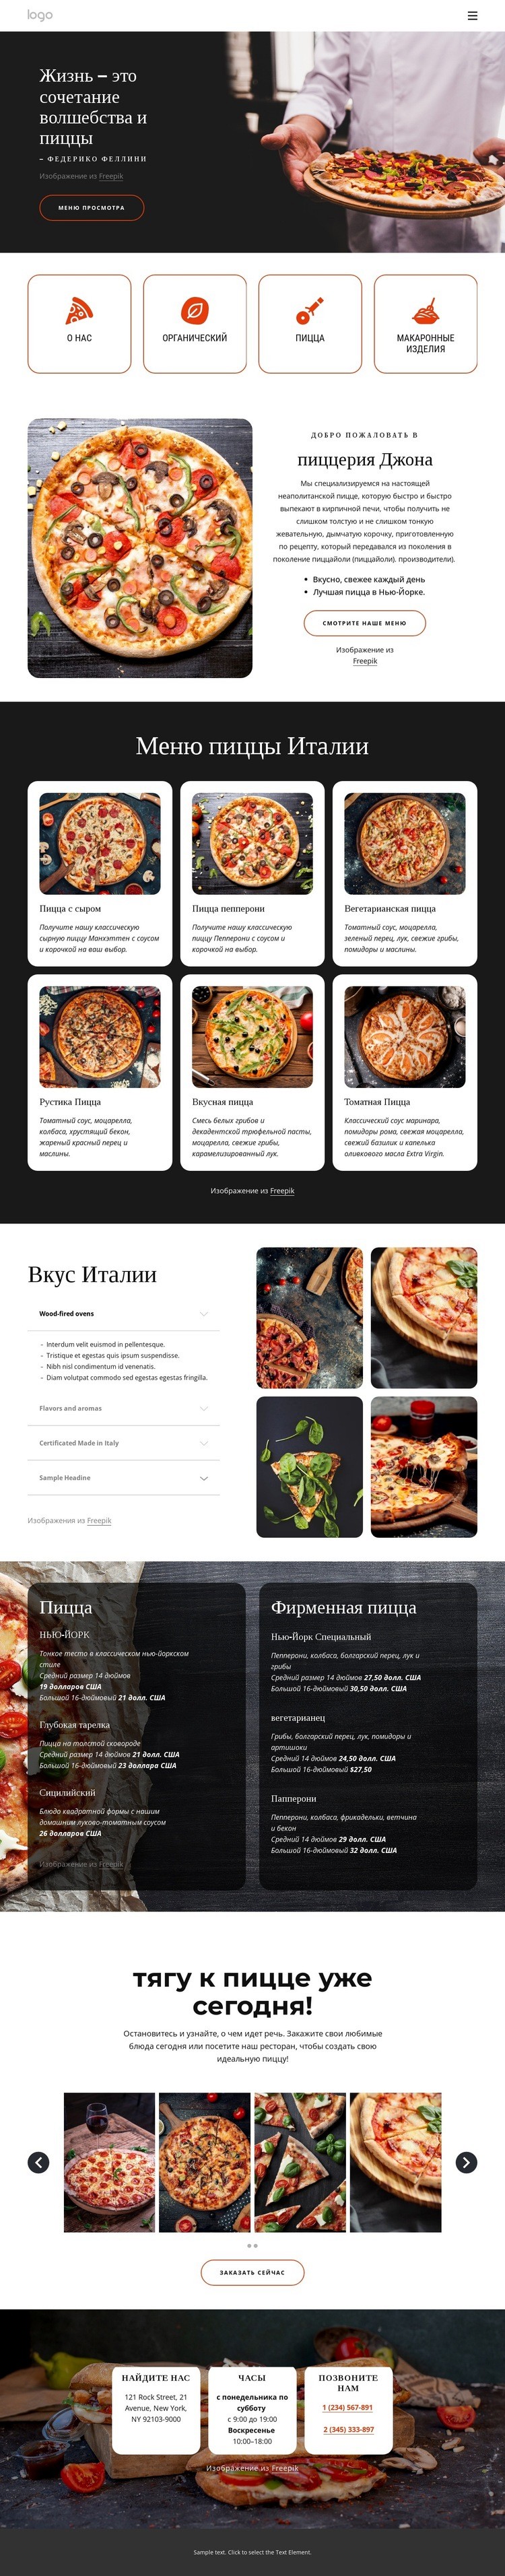 Пиццерия для всей семьи Мокап веб-сайта